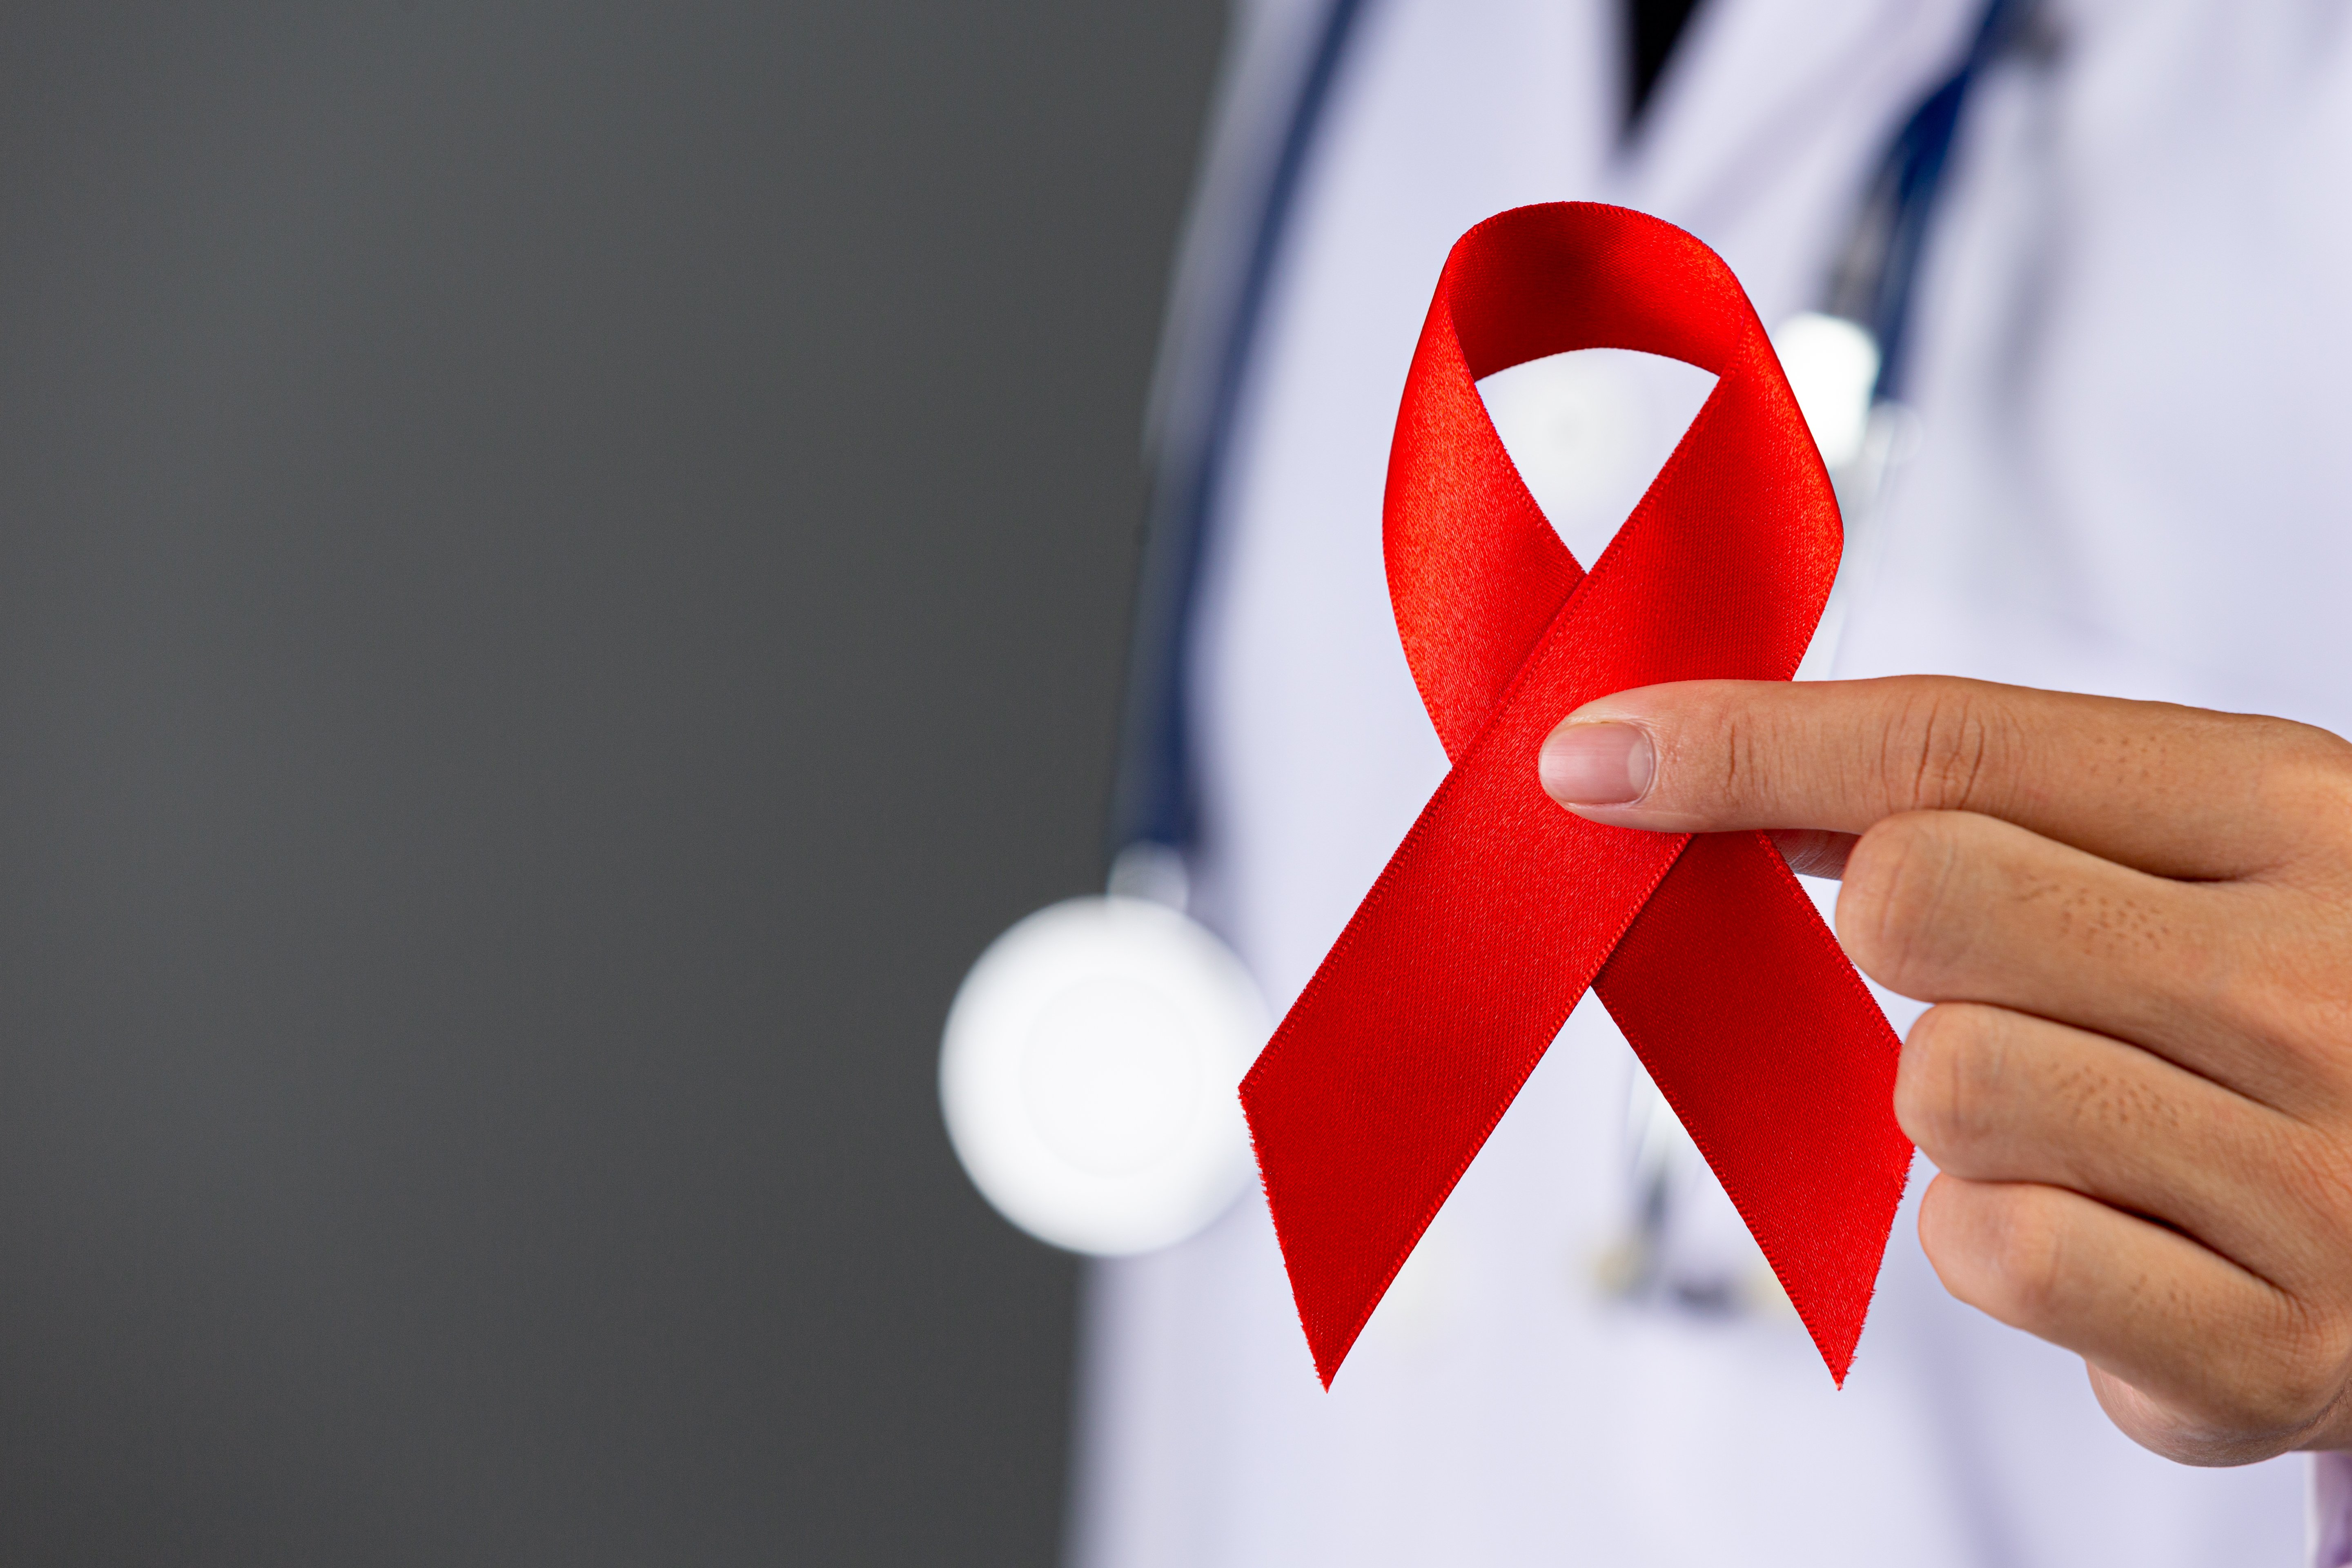 Autotest de dépistage du VIH